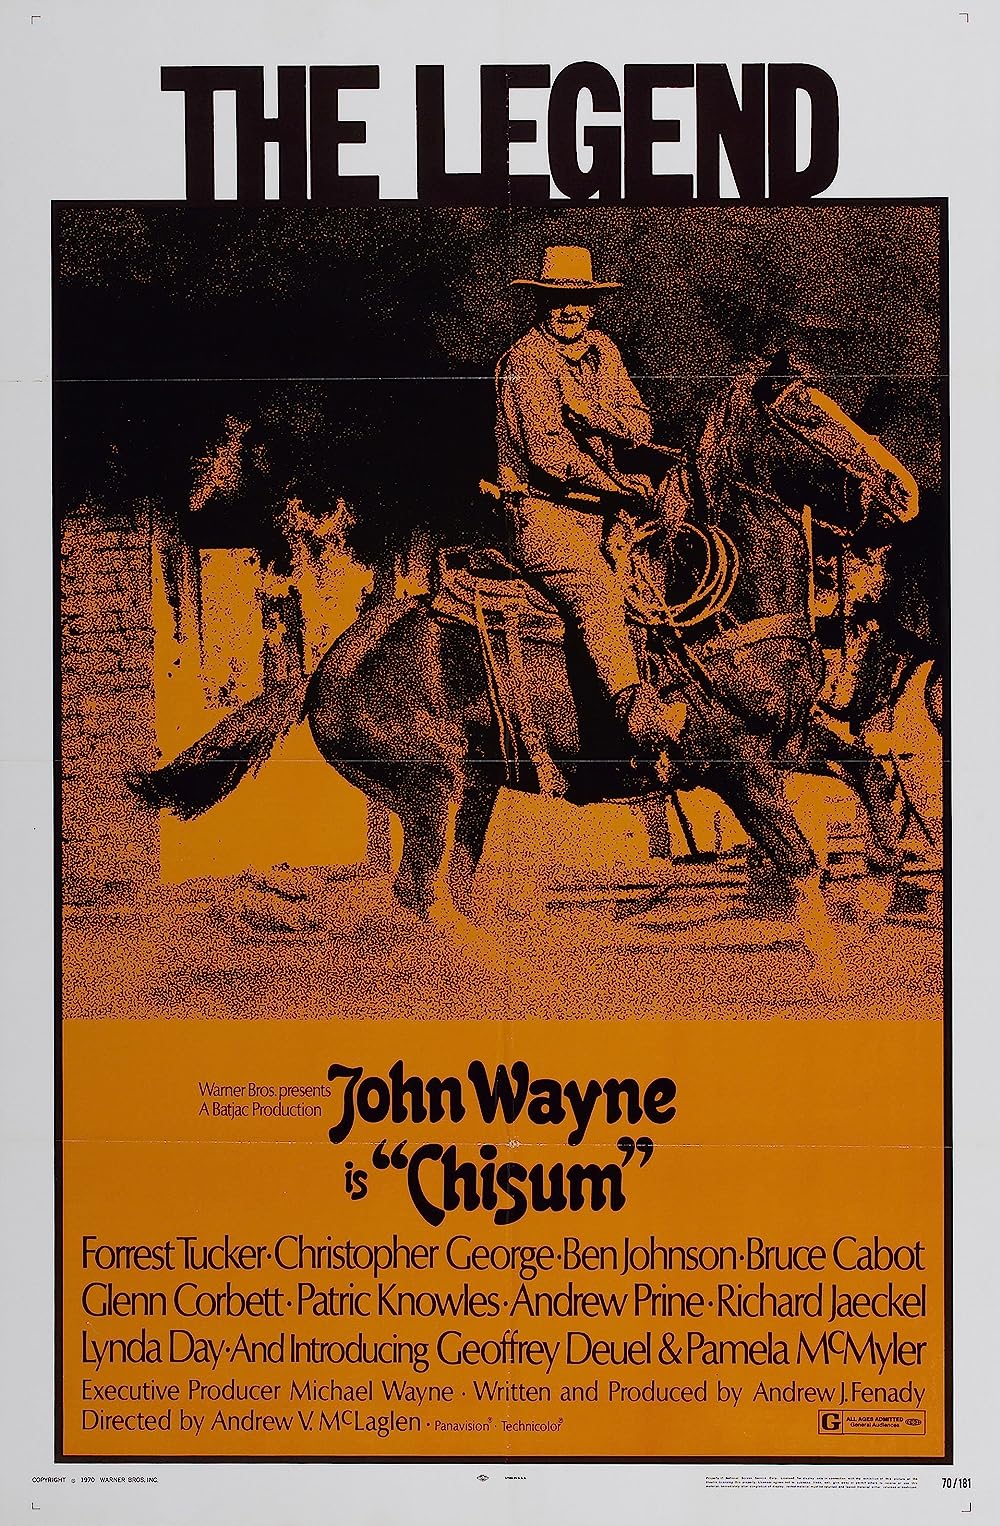 Stiahni si Filmy CZ/SK dabing Chisum (1970)(EN/SK/CZ)[BdRip][1080p] = CSFD 69%